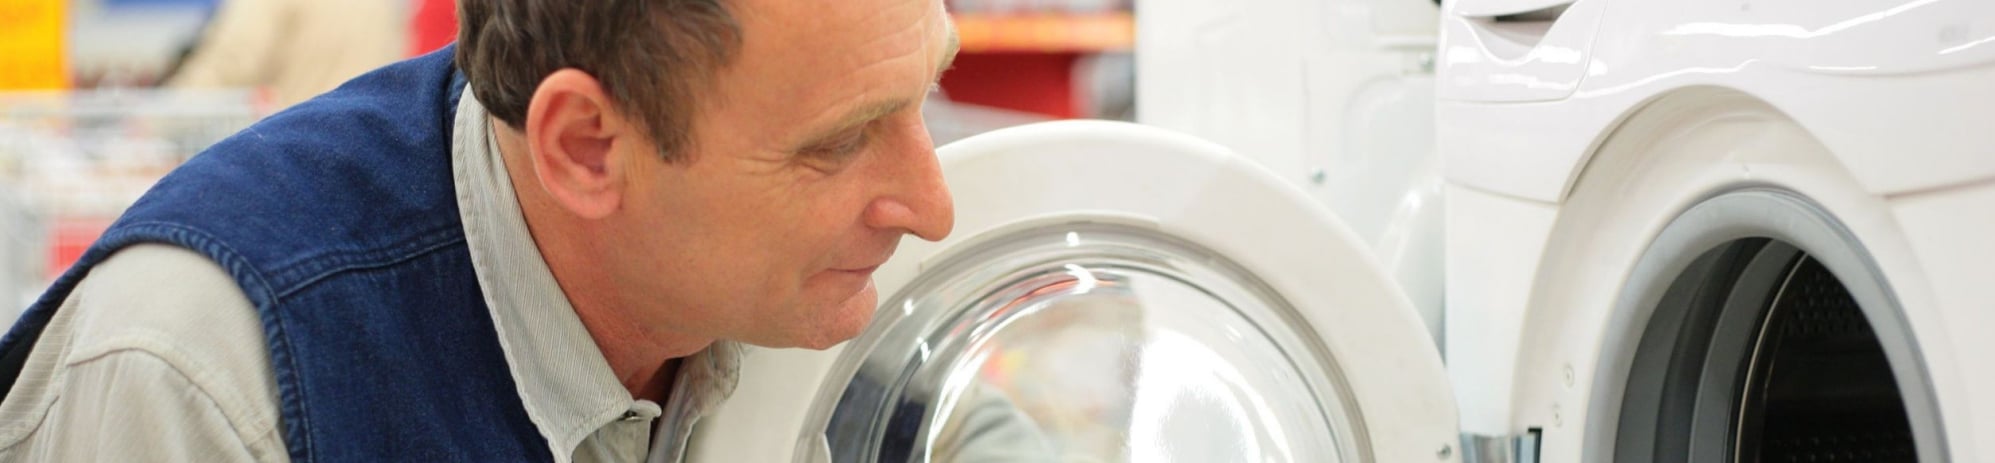 Ein Mann schaut in eine gebrauchte Waschmaschine